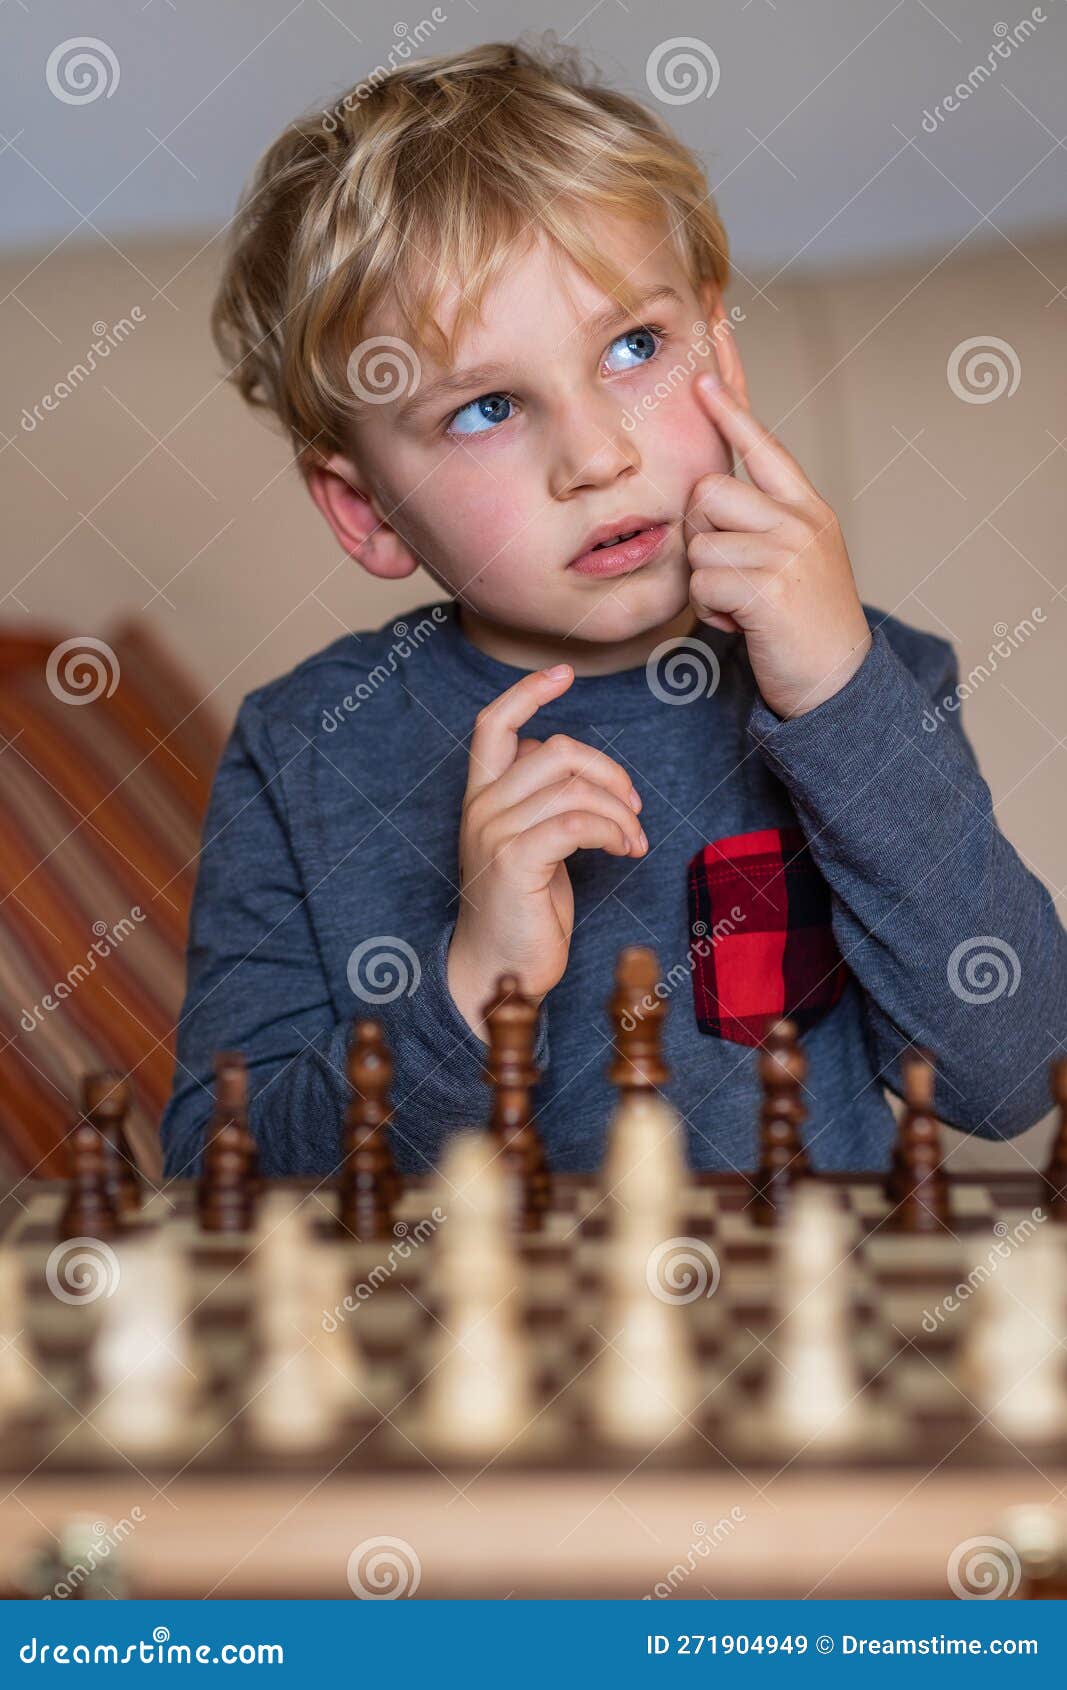 Pequena Criança De 5 Anos Jogando Xadrez No Grande Xadrez